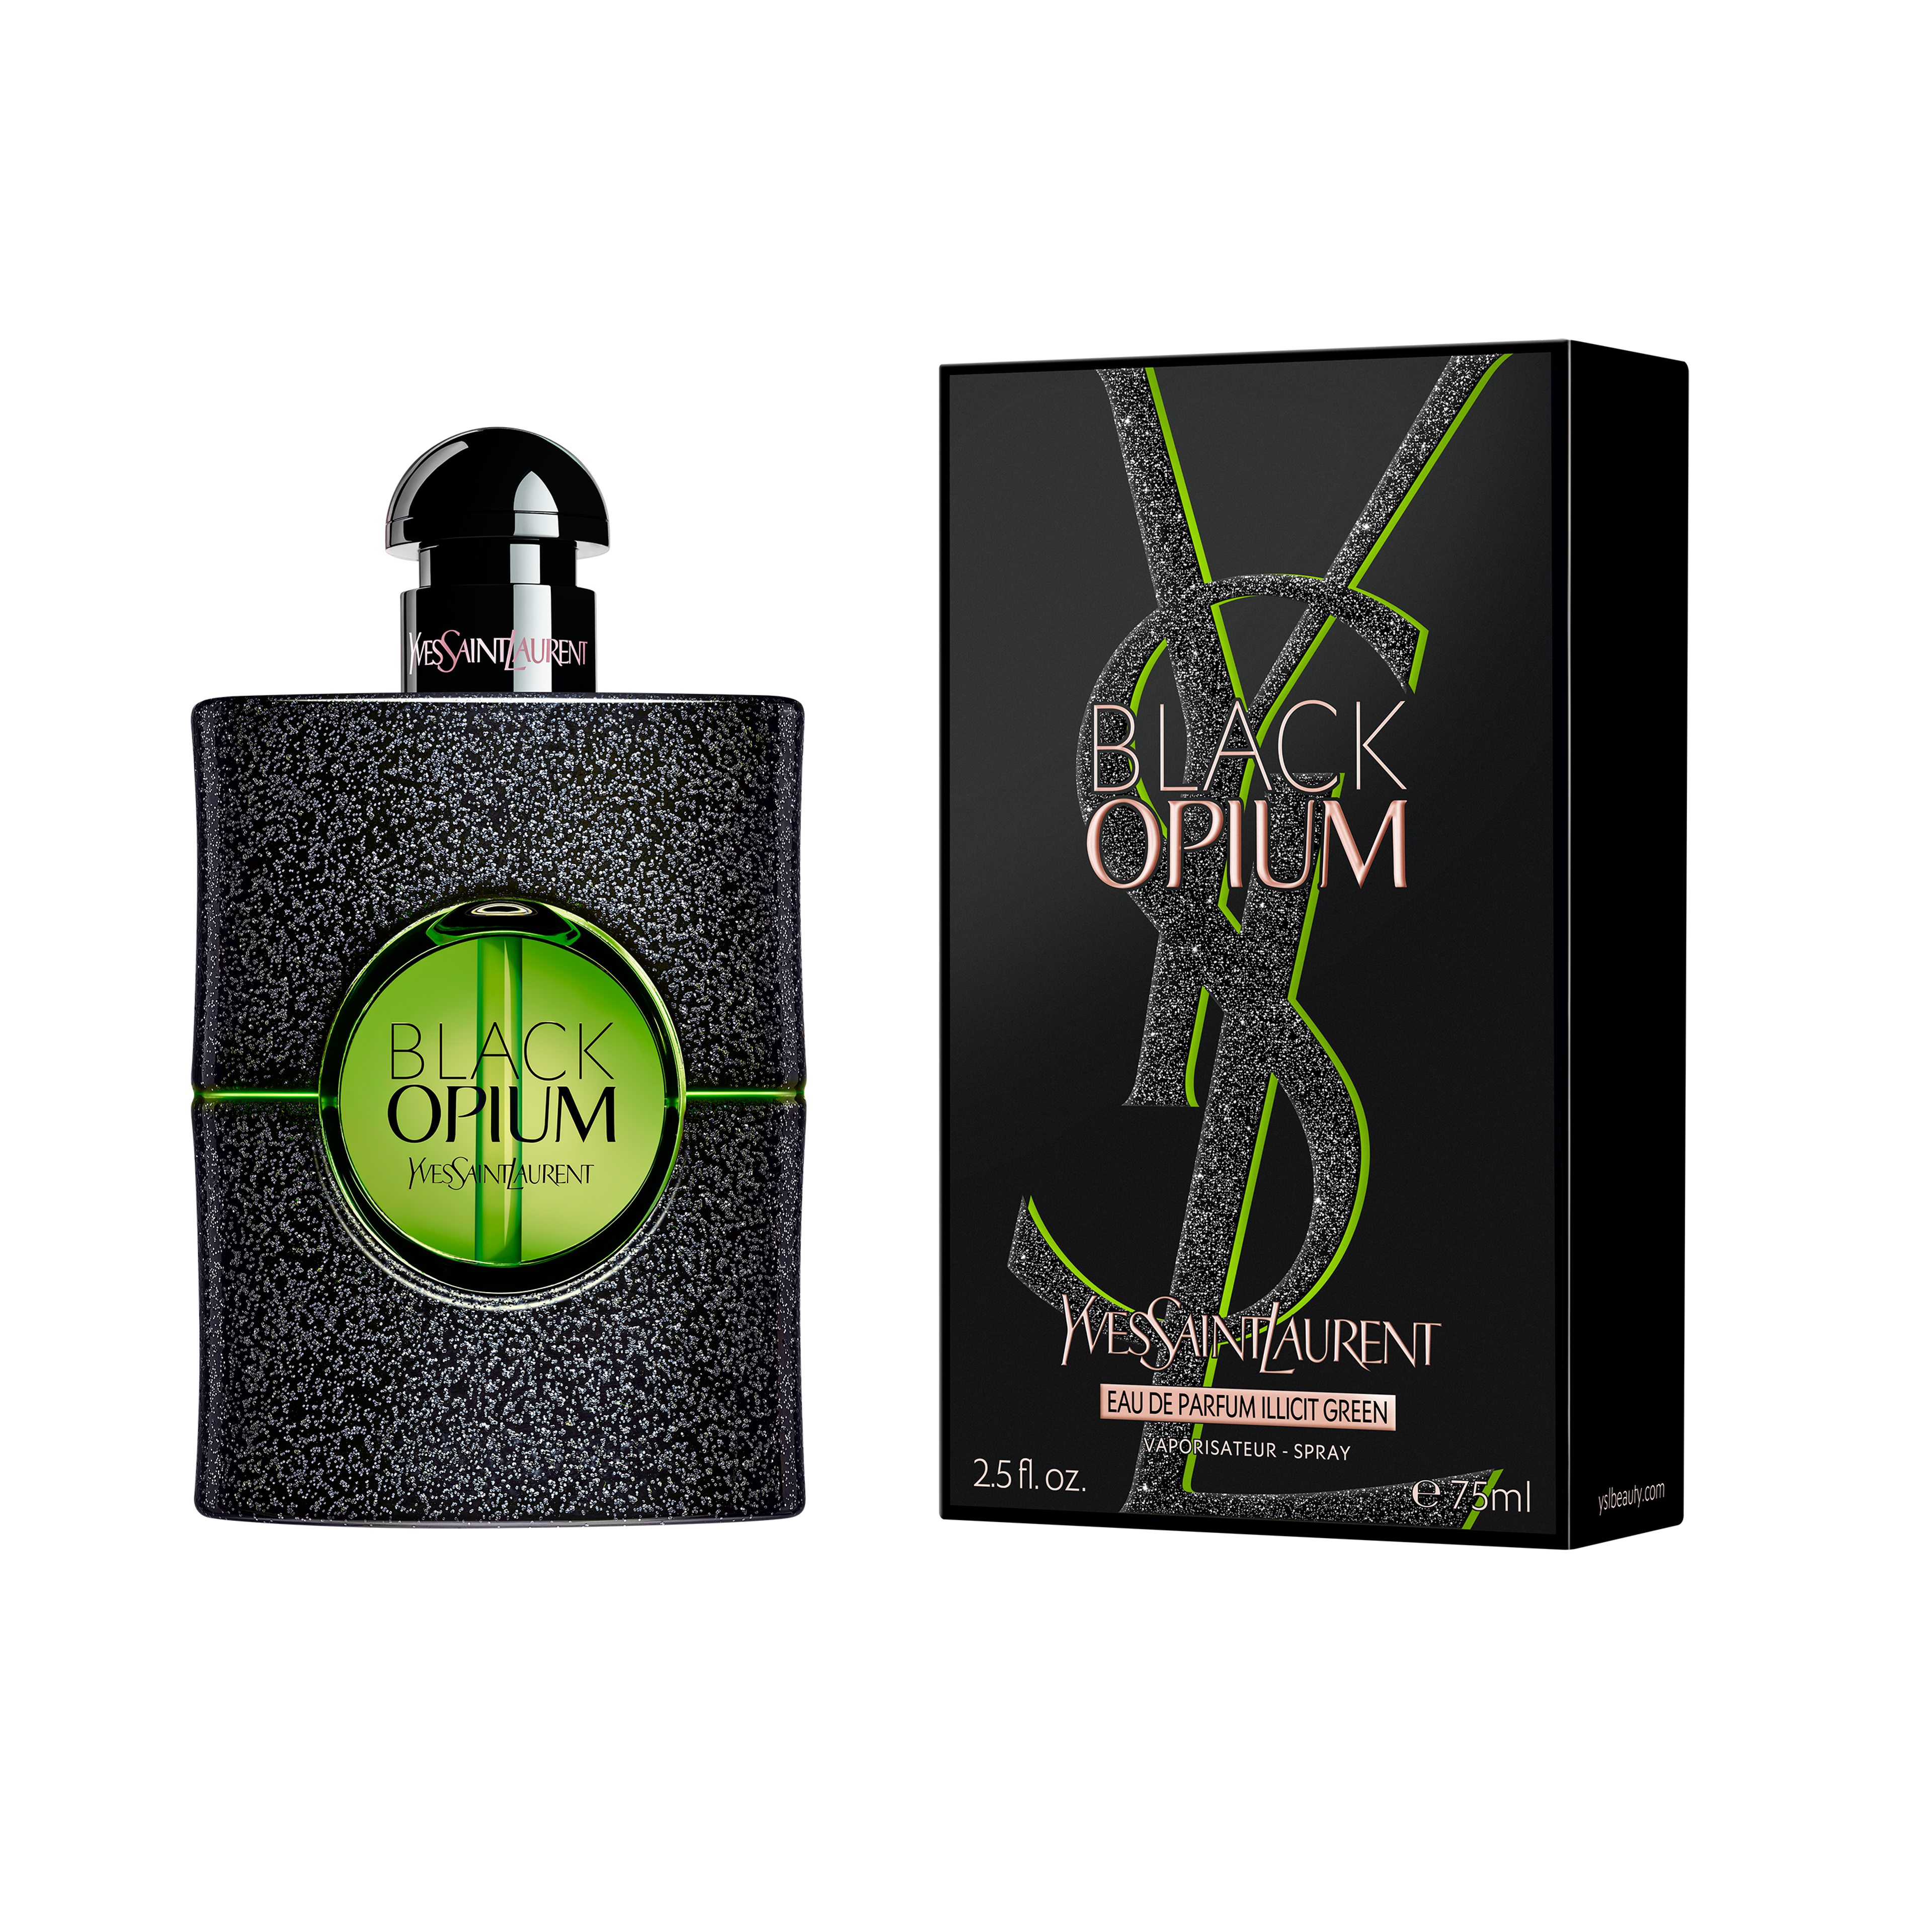 Yves Saint Laurent Black Opium Eau De Parfum Illicit Green 2